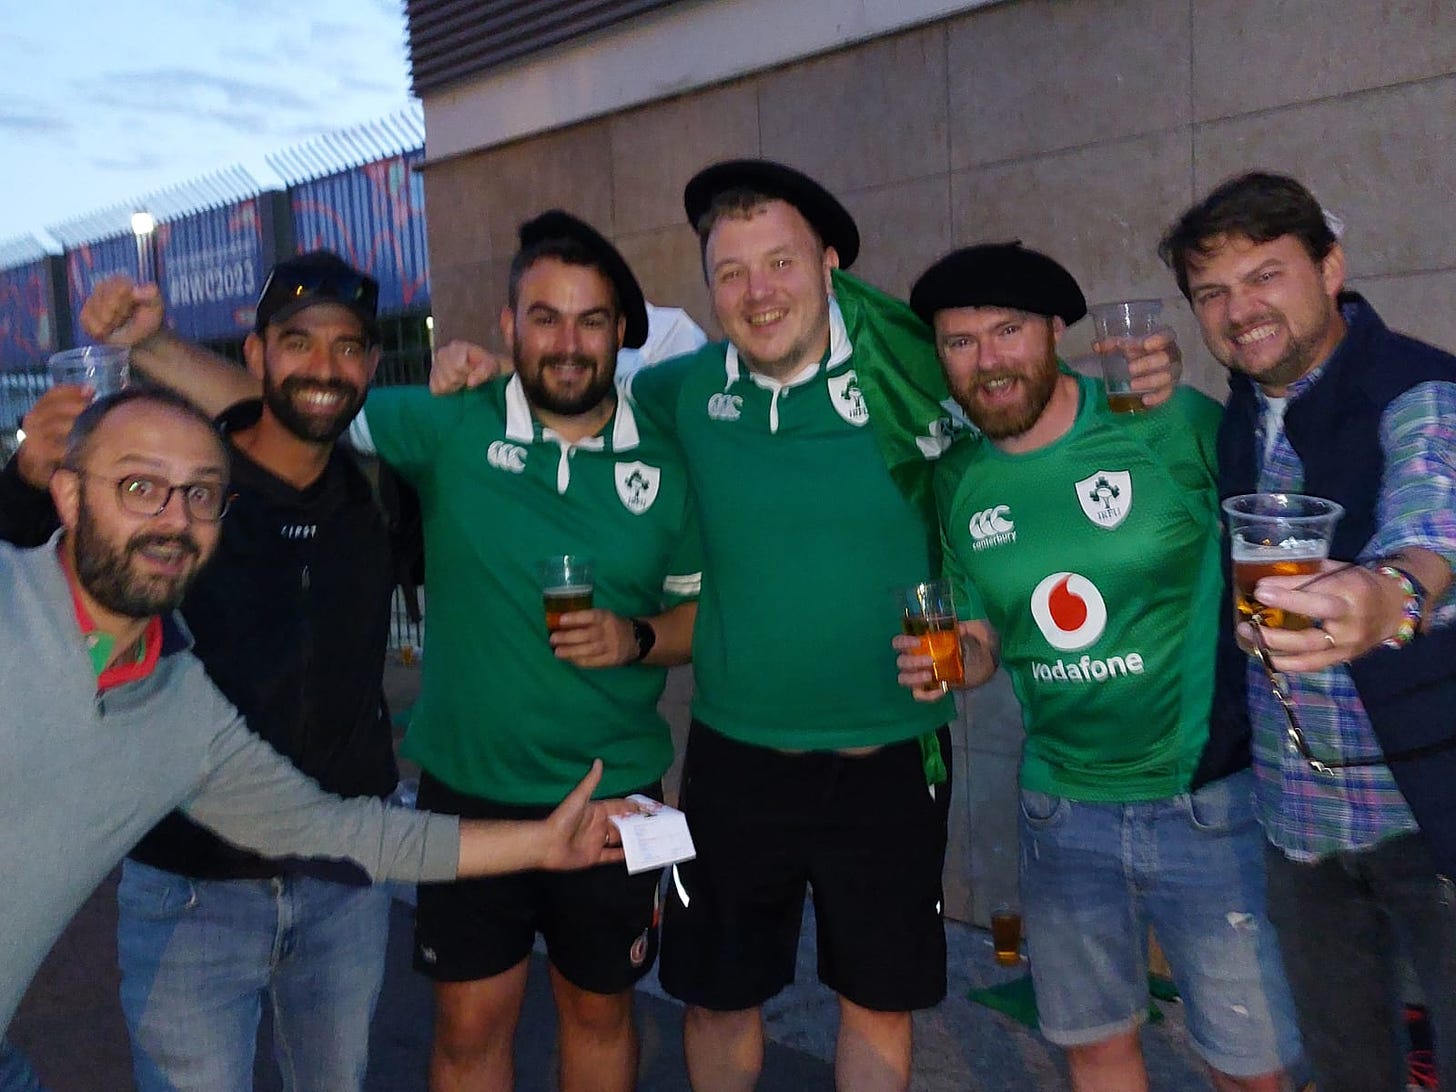 Moi ça roule, je me remet de l'ambiance folle avec les Irlandais lors de la coupe du monde de rugby